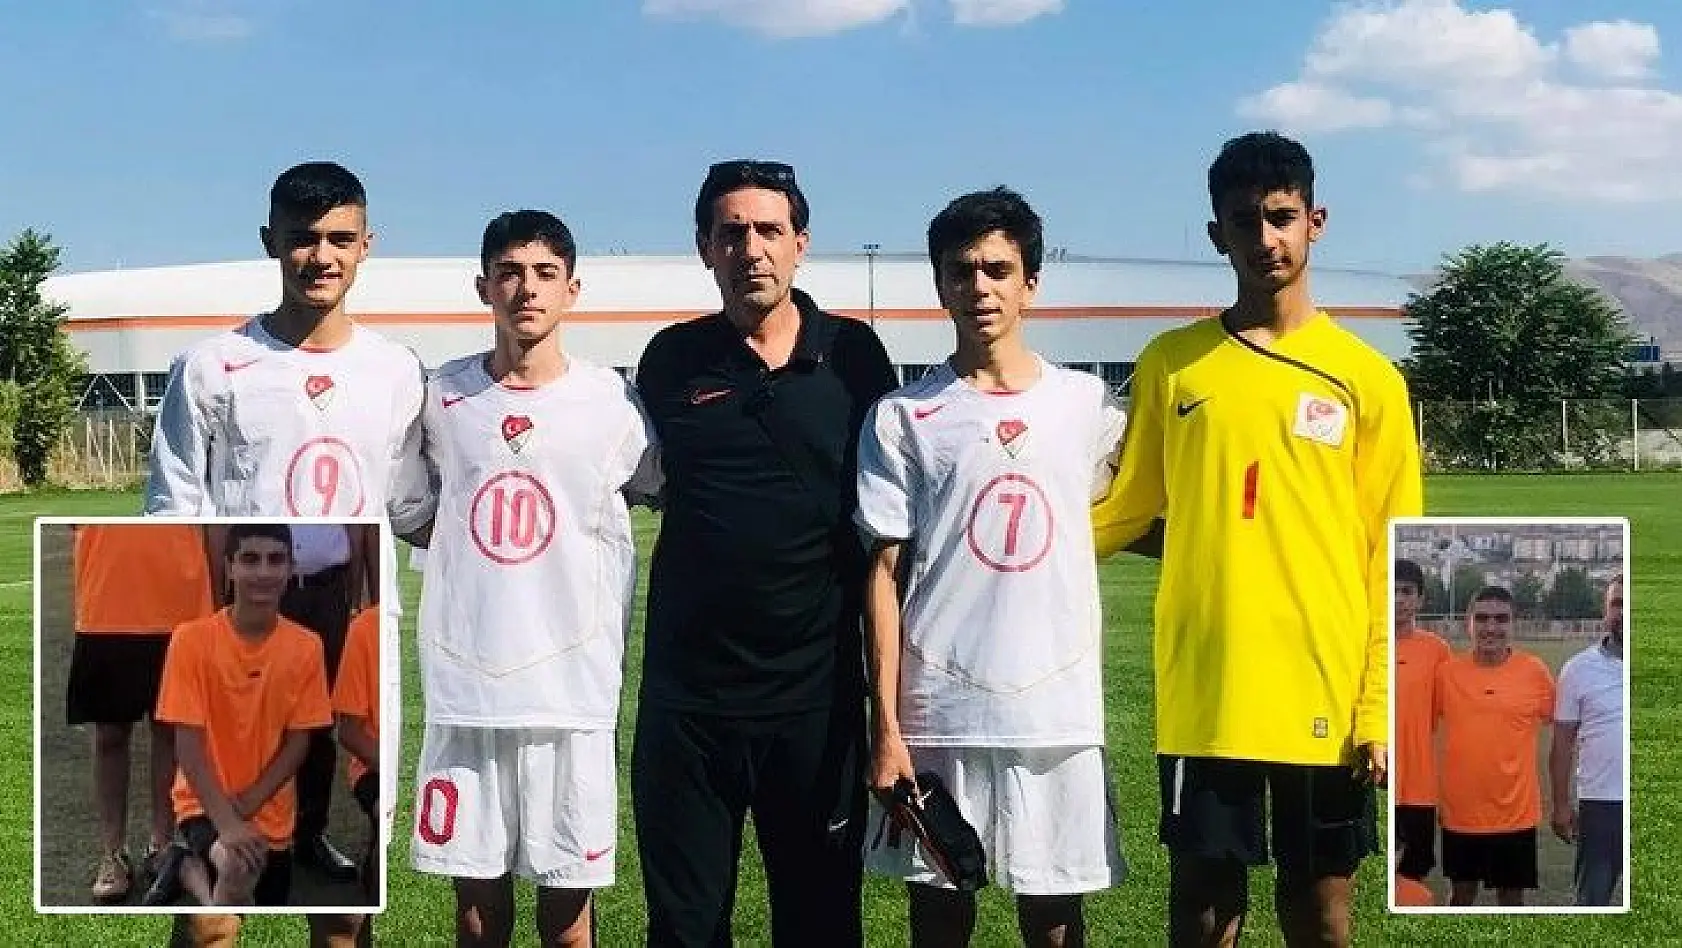 15 yaş altı milli takım bölge seçmelerine Elazığ'dan 6 futbolcu katıldı